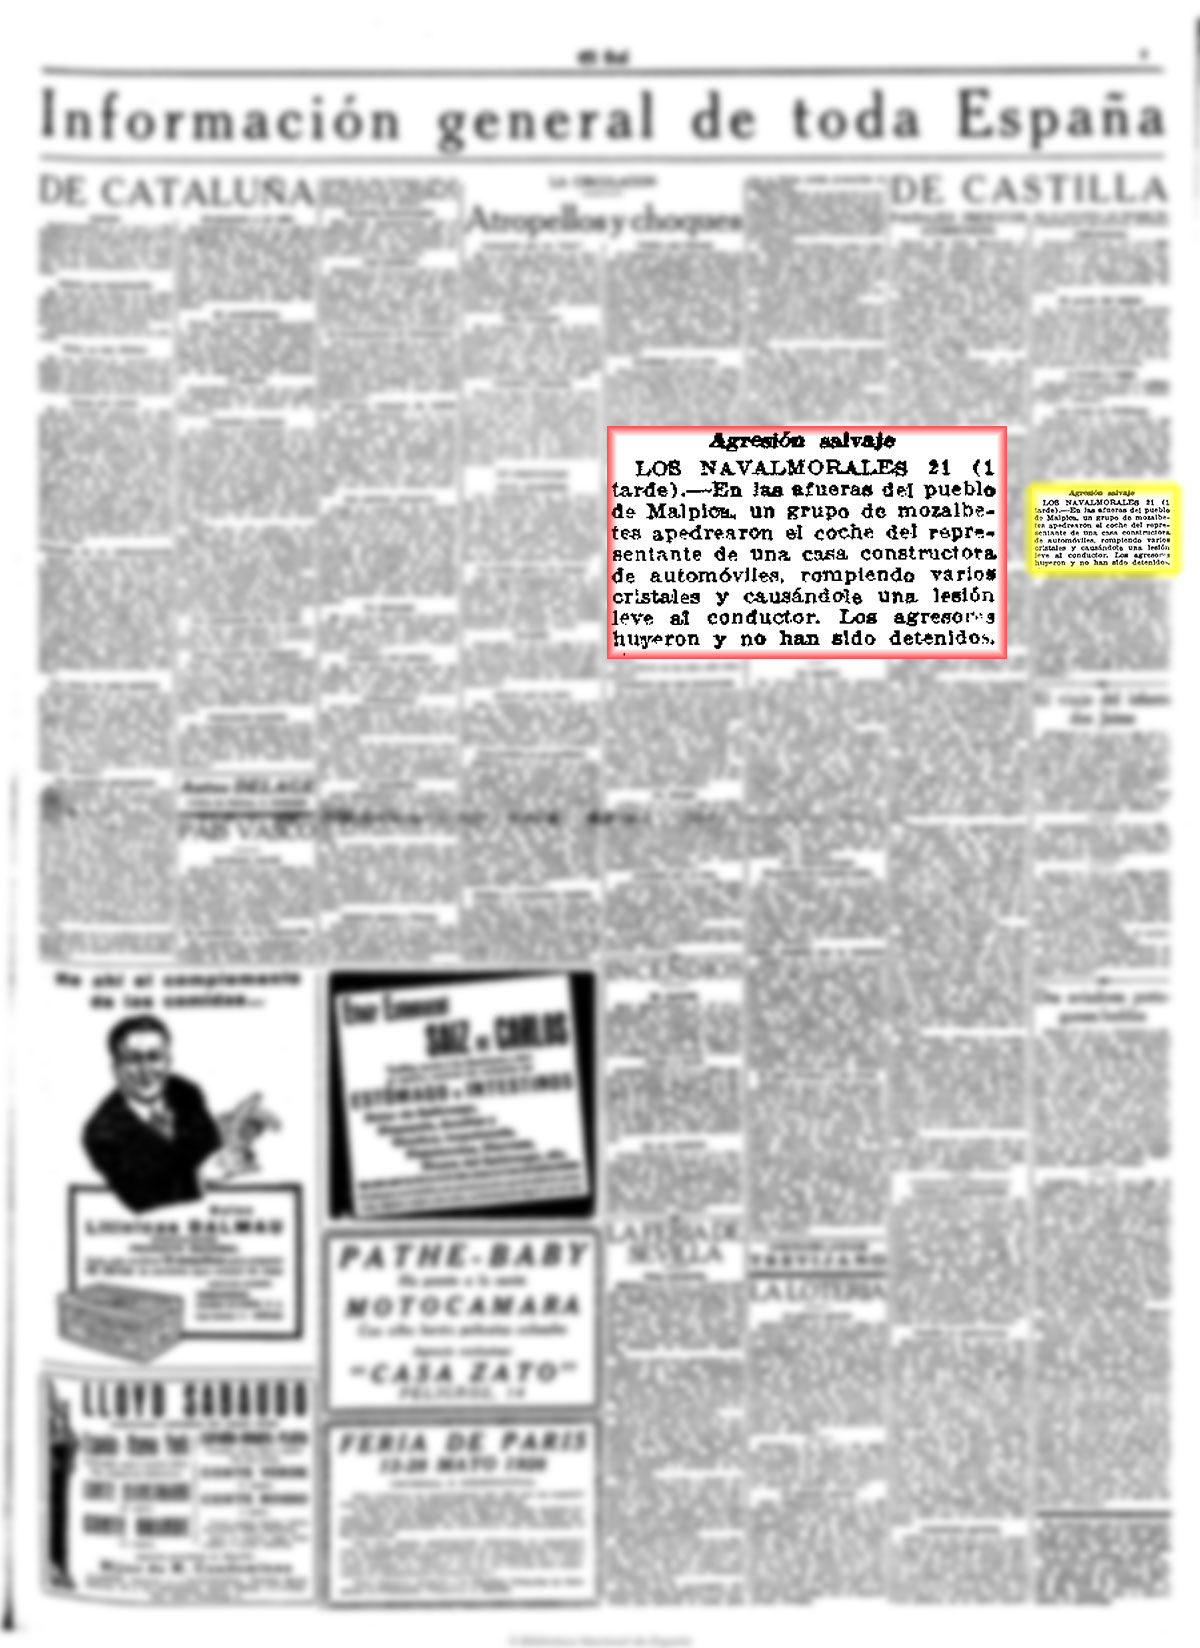 Agresión a un repreentante de un casa de automoviles en las afueras de Malpica. El Sol 22-4-1928